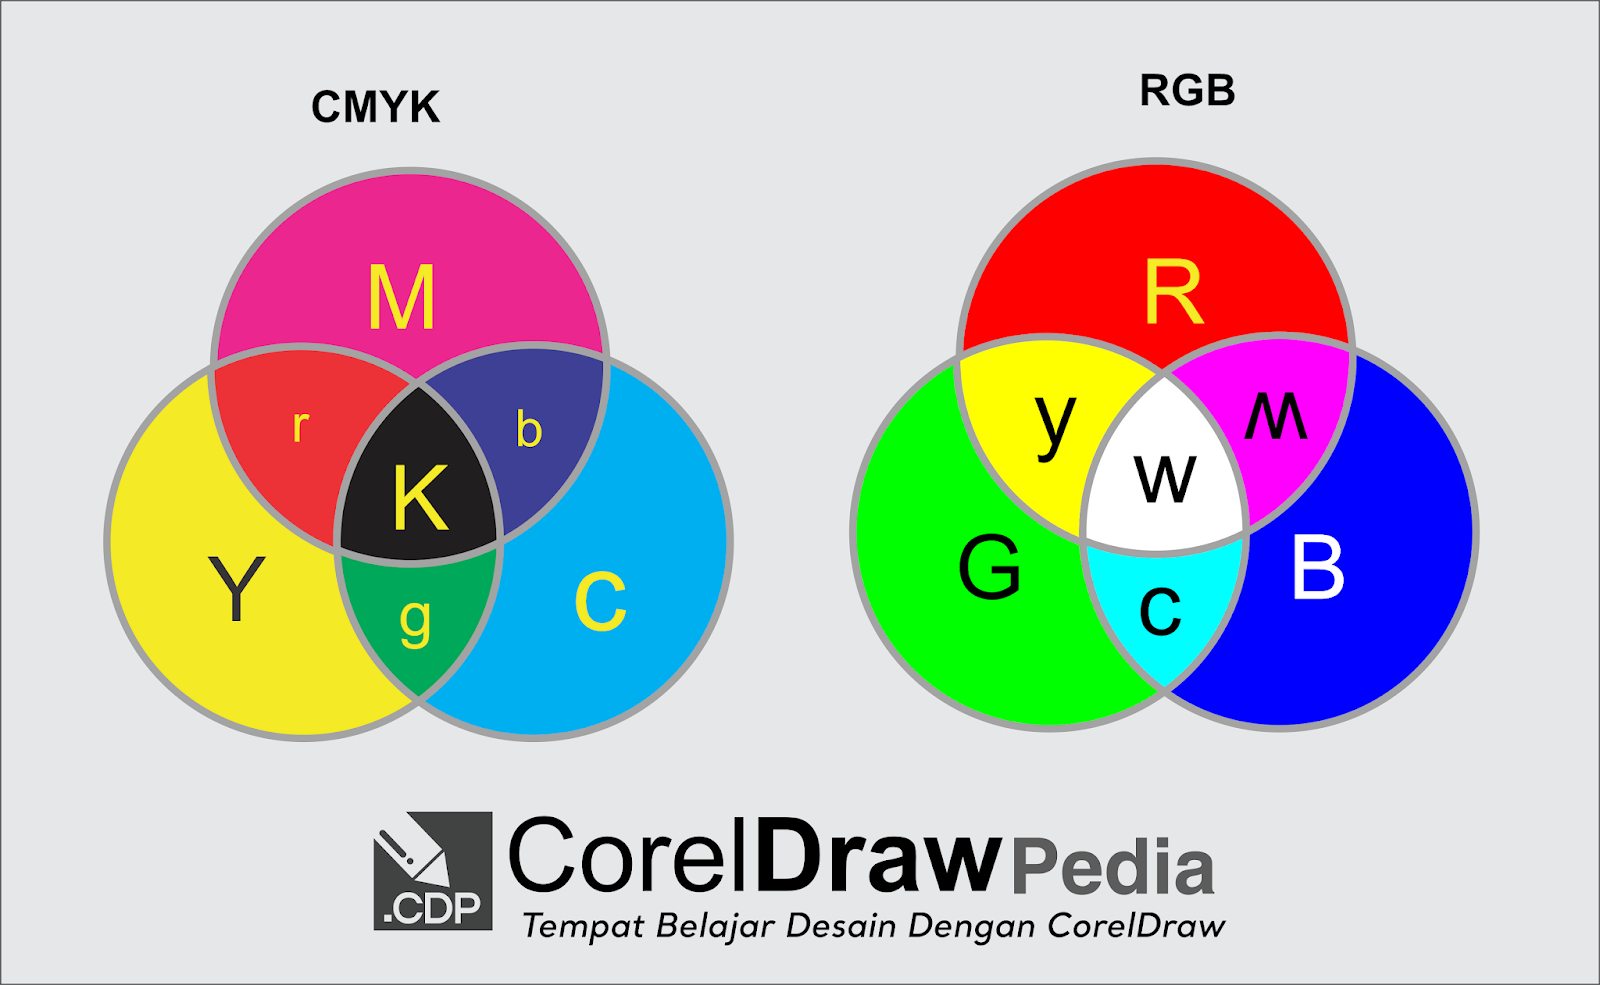  Perbedaan  Penggunaan CMYK dan  RGB dalam Desain  Grafis  